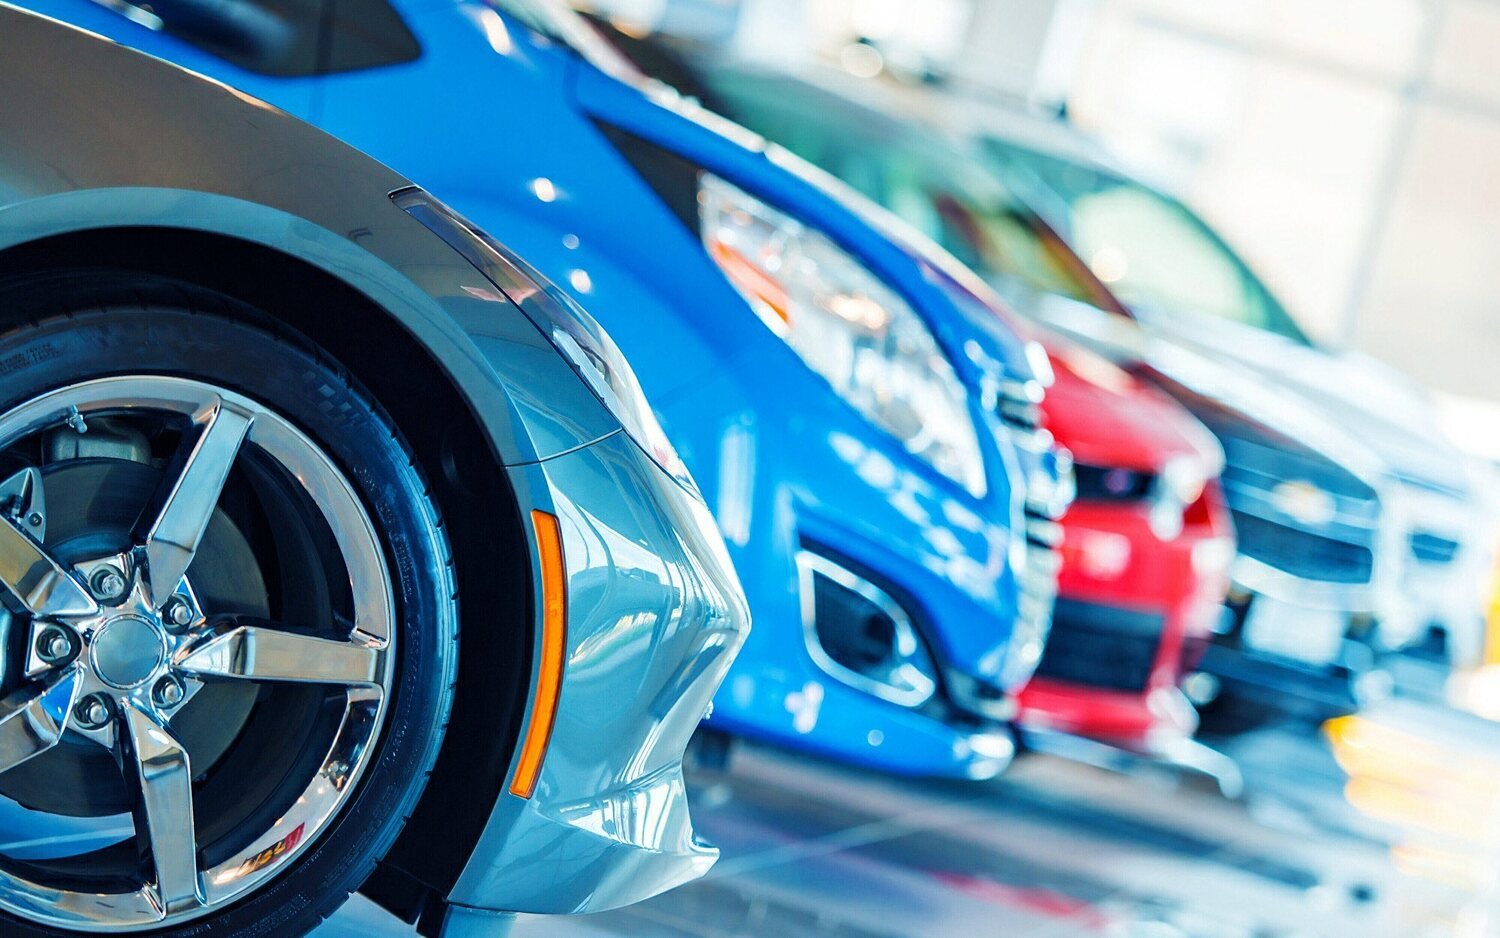 Las ventas de vehículos de ocasión caen un 8% en julio